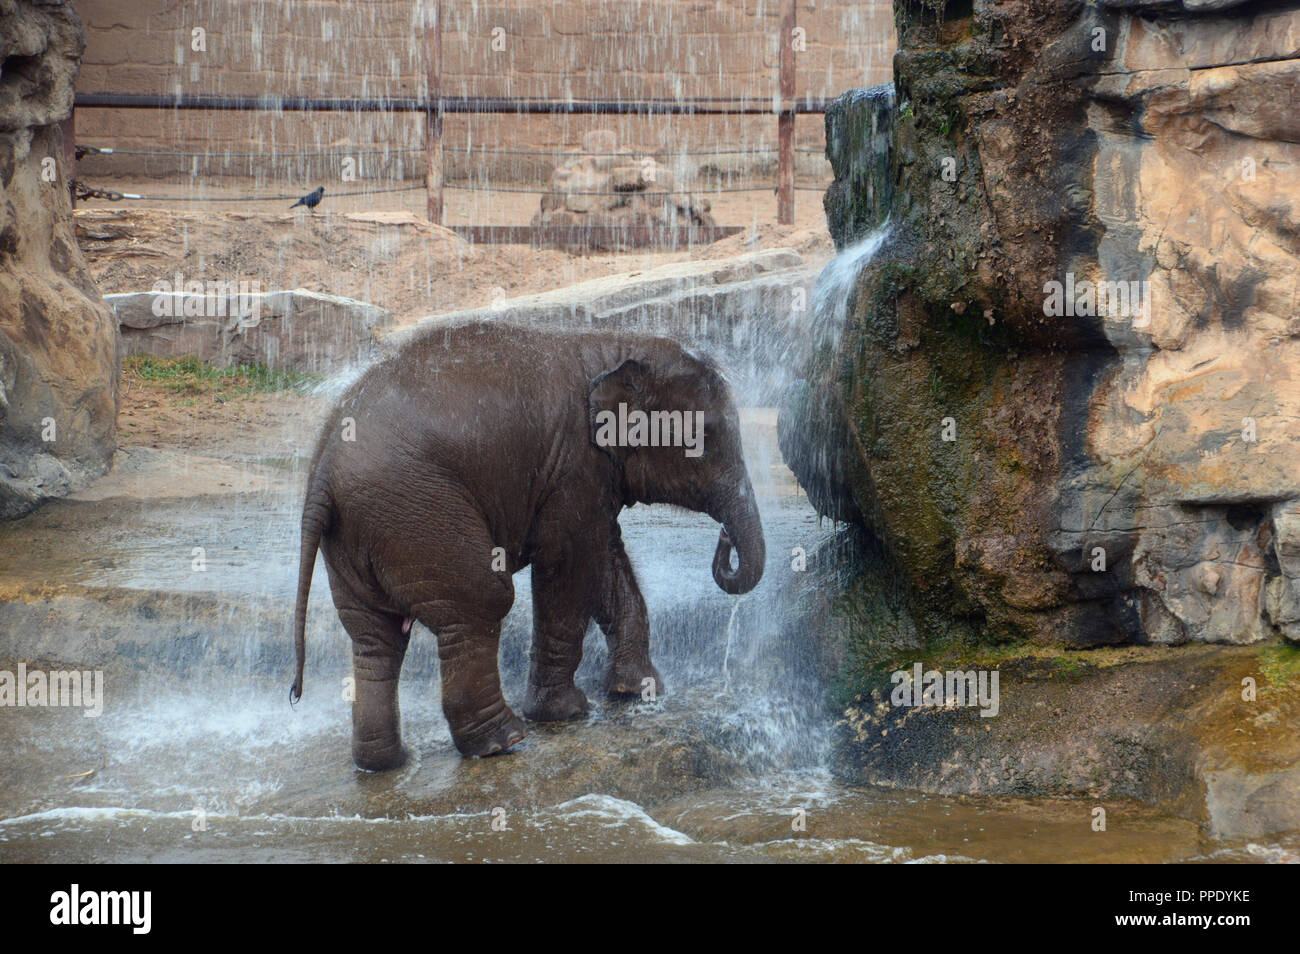 Un jeune éléphant d'Asie (Elephas maximus) de prendre une douche sous une cascade dans son enclos au Zoo de Chester. Banque D'Images